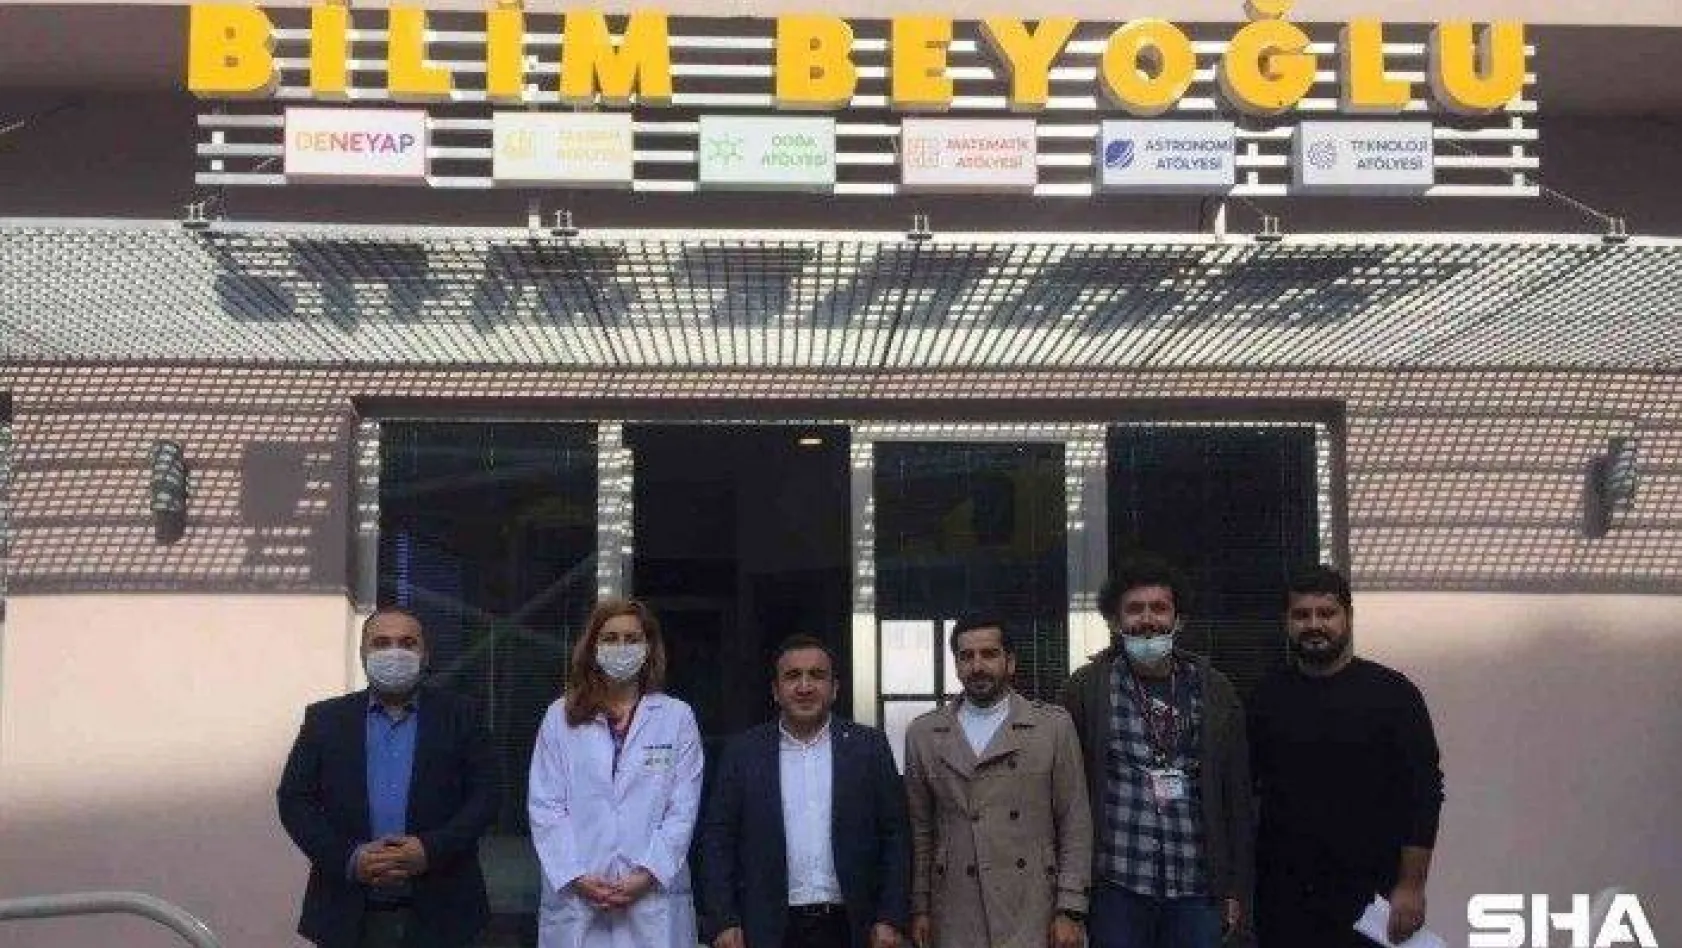 T3 Vakfı'ndan Bilim Beyoğlu'na ziyaret